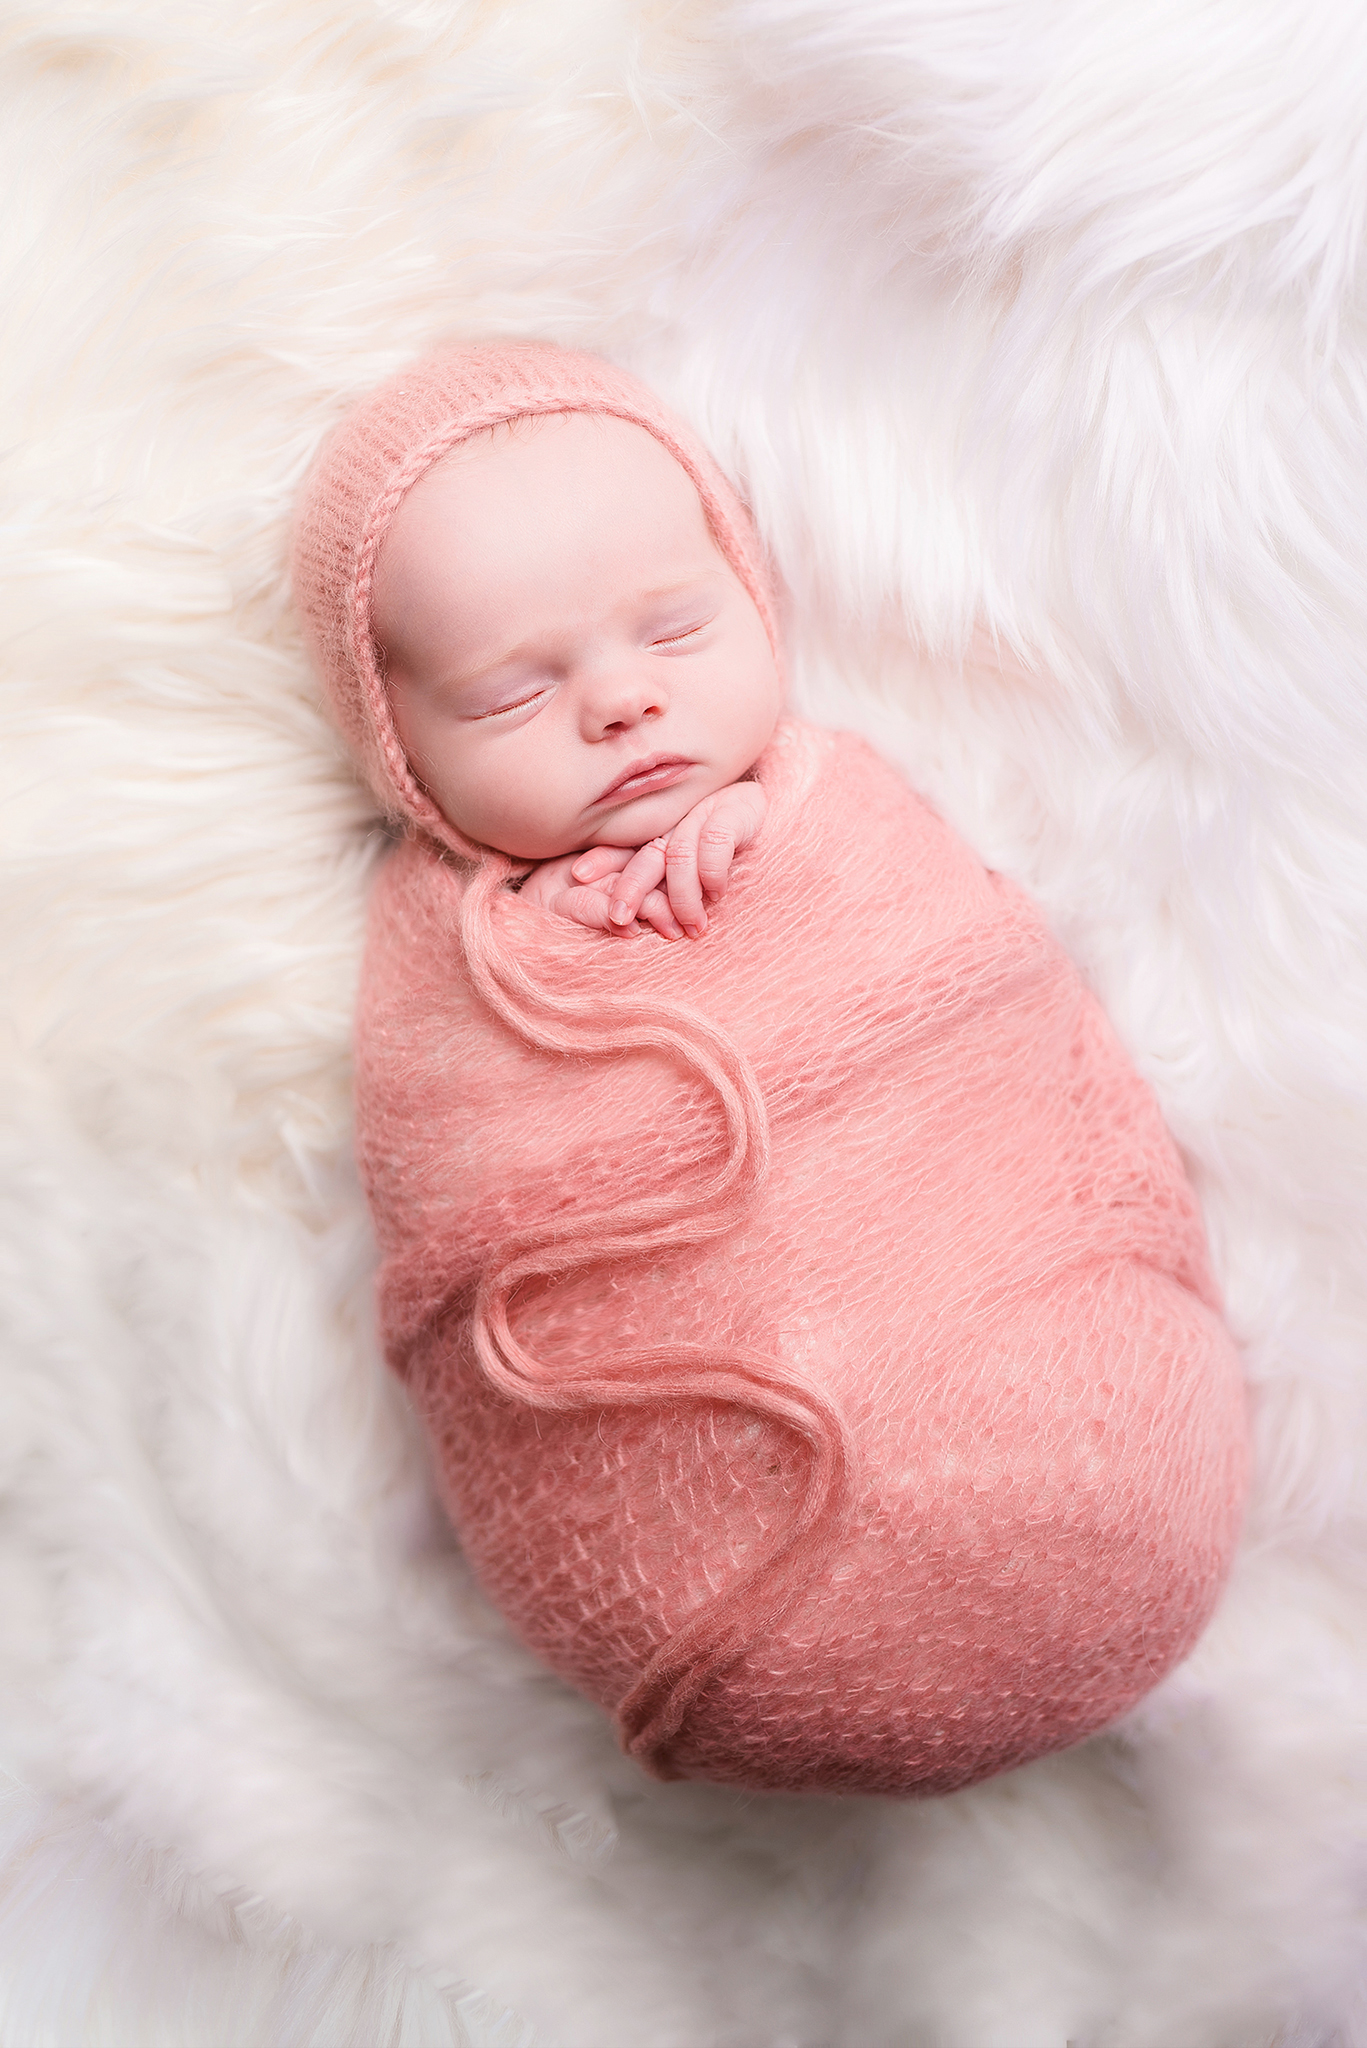 Séance photo naissance bébé fille rose prés de Nantes